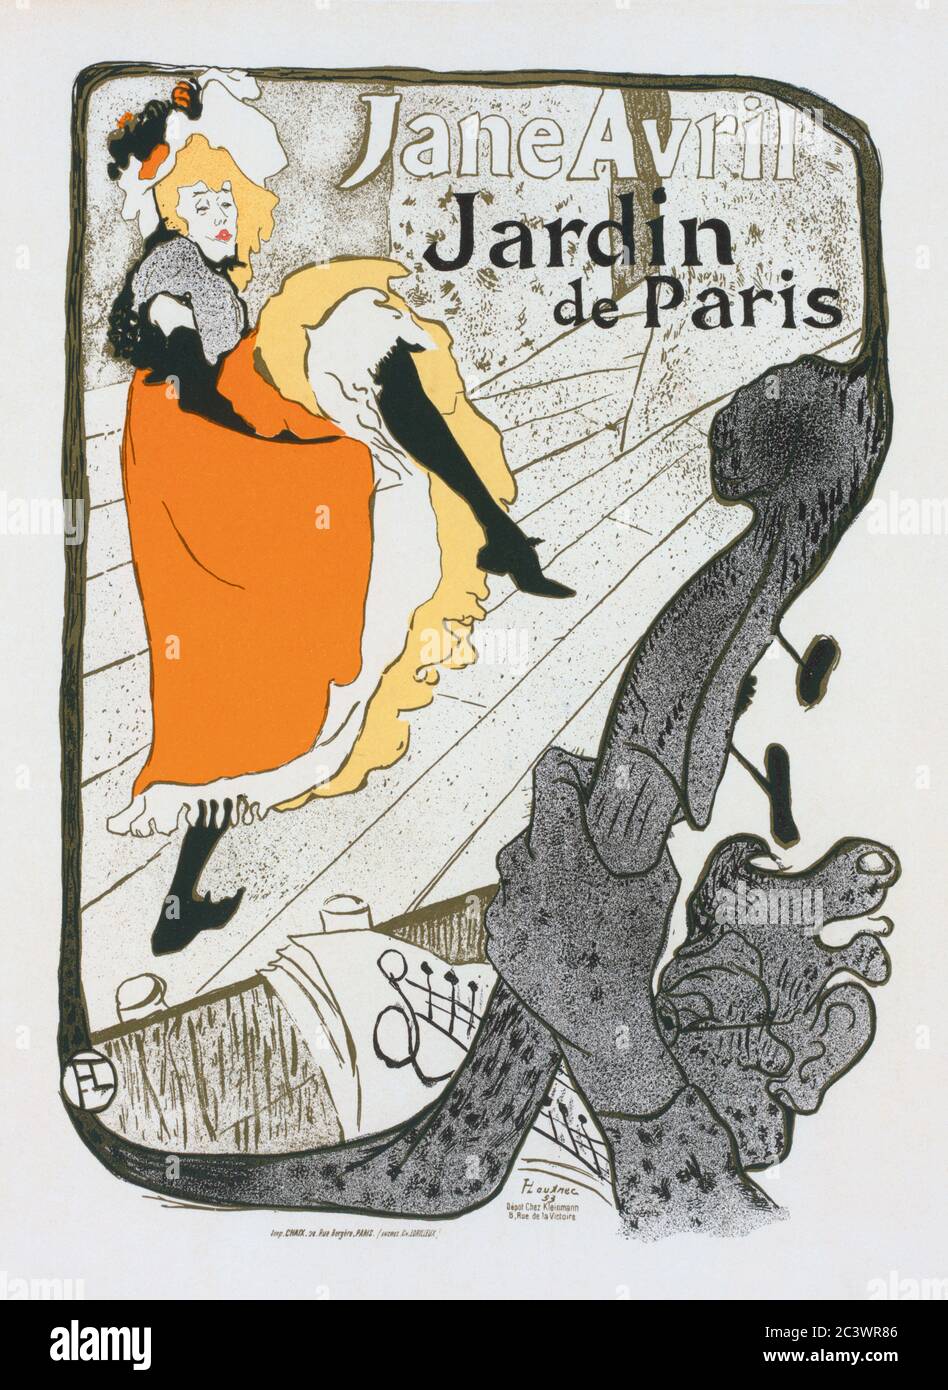 Jane Avril dancing at the Jardin de Paris.  1893 poster by Henri de Toulouse-Lautrec. Henri de Toulouse-Lautrec, French artist, 1864-1901.  The Jardin de Paris was a 'cafe-concert' on the Champs-Elysees. Stock Photo